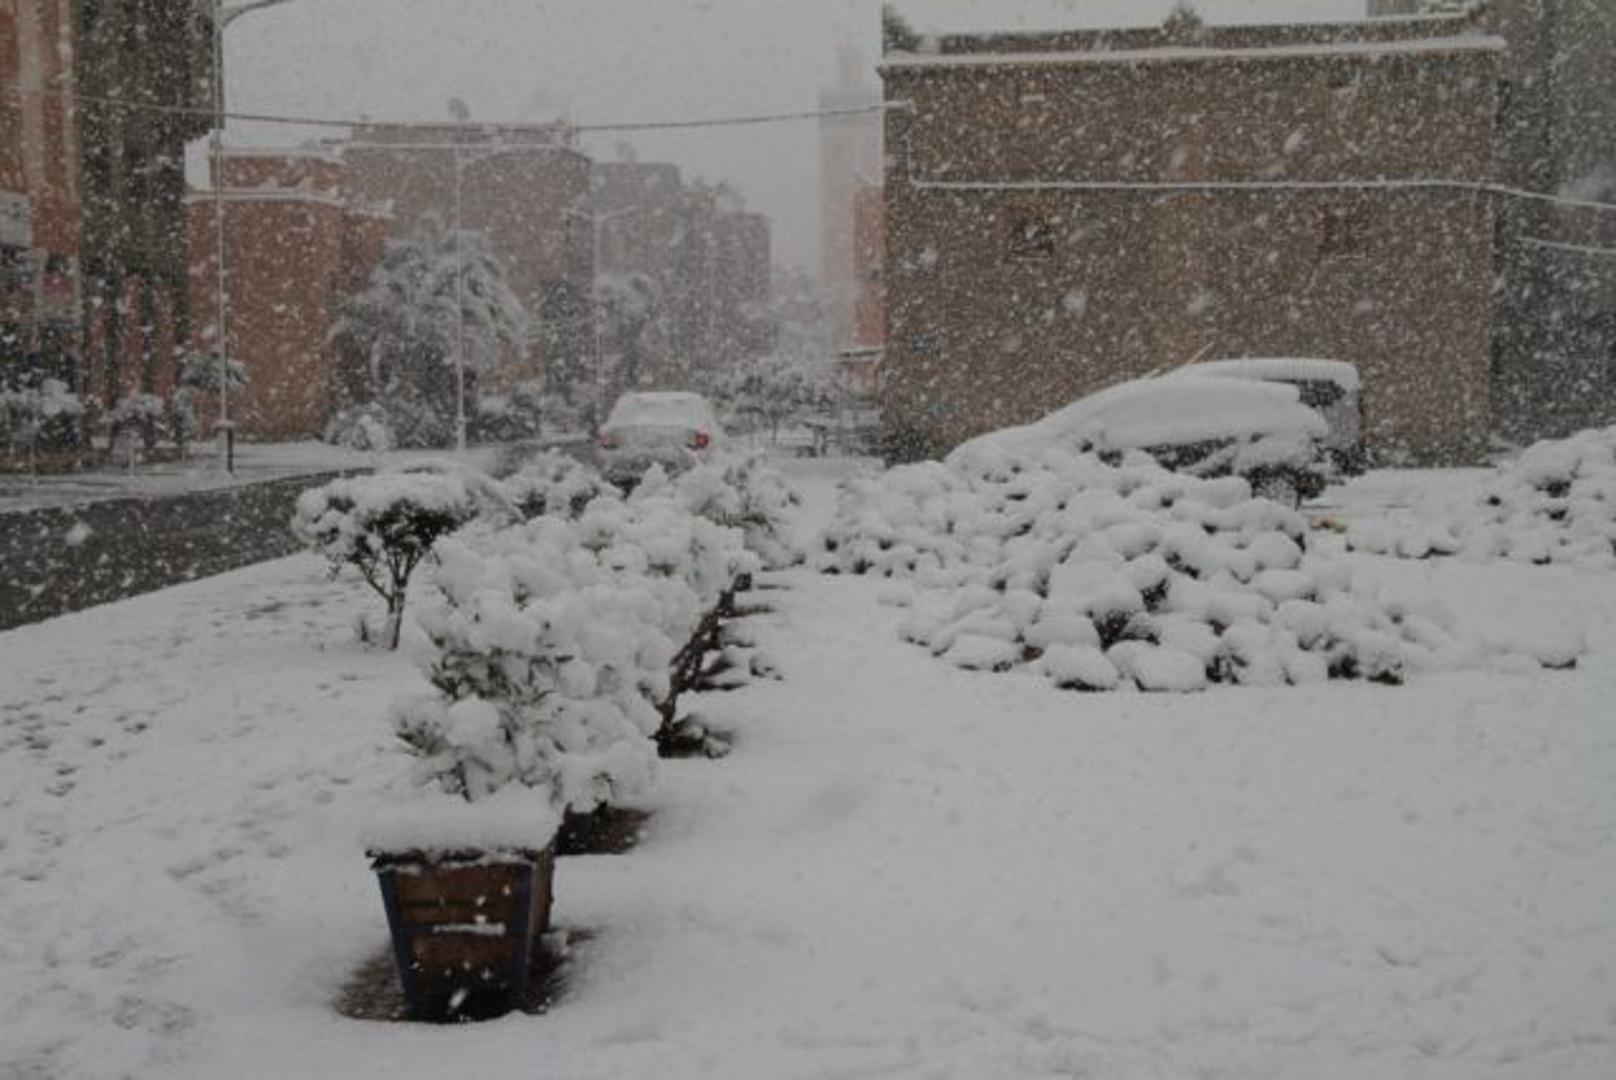 Stanovnike gradova Ouarzazate, Taroudant i Zagora iznenadio je bijeli prekrivač koji nisu očekivali.